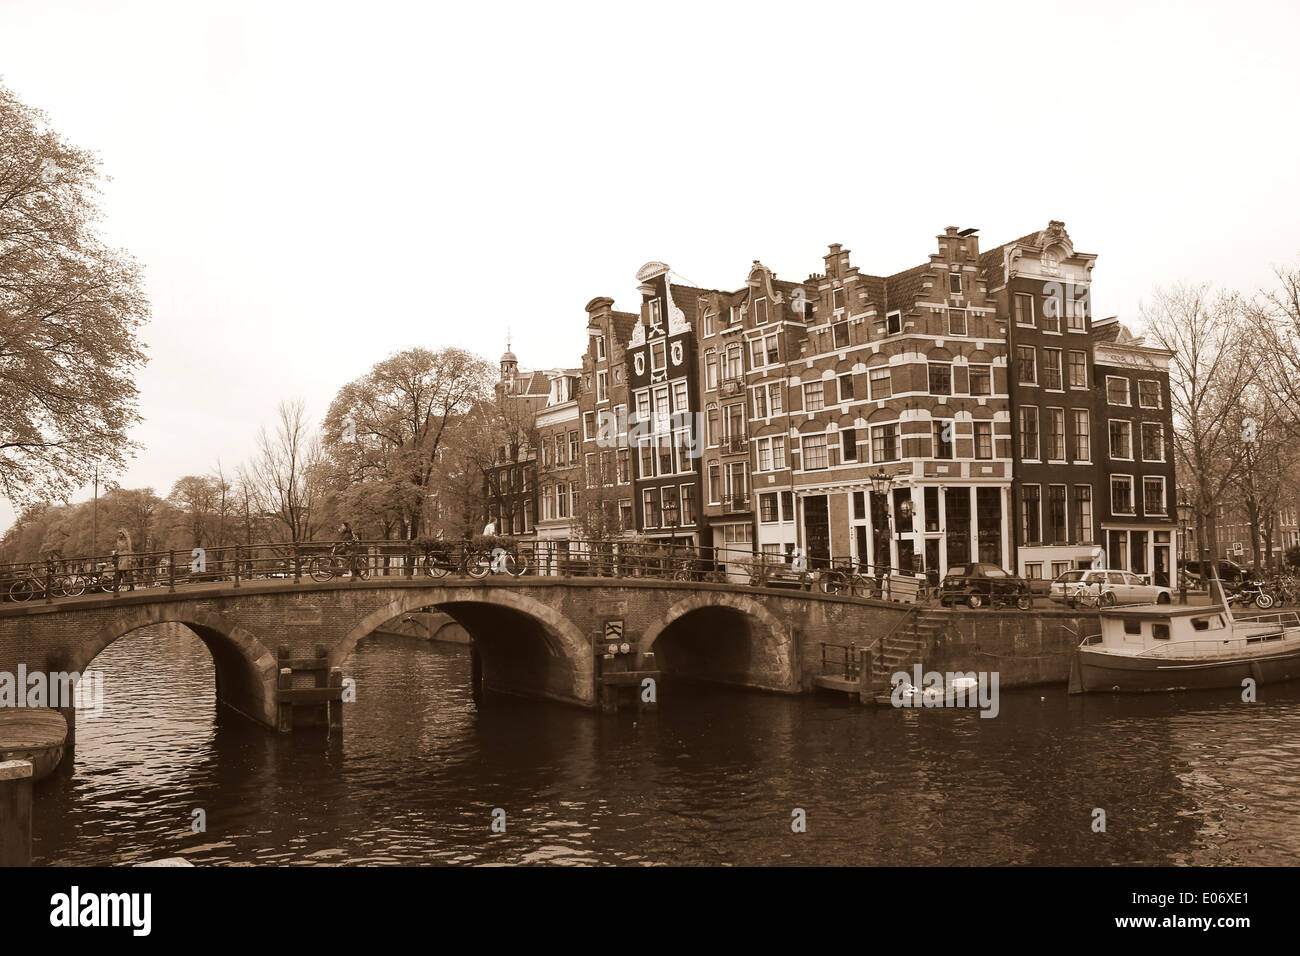 Brucke Und Alte Hauser Die Prinsengracht Bouwersgracht Kanal In Amsterdam Trifft Jordaan Viertel Den Niederlanden Sepia Bearbeiten Stockfotografie Alamy